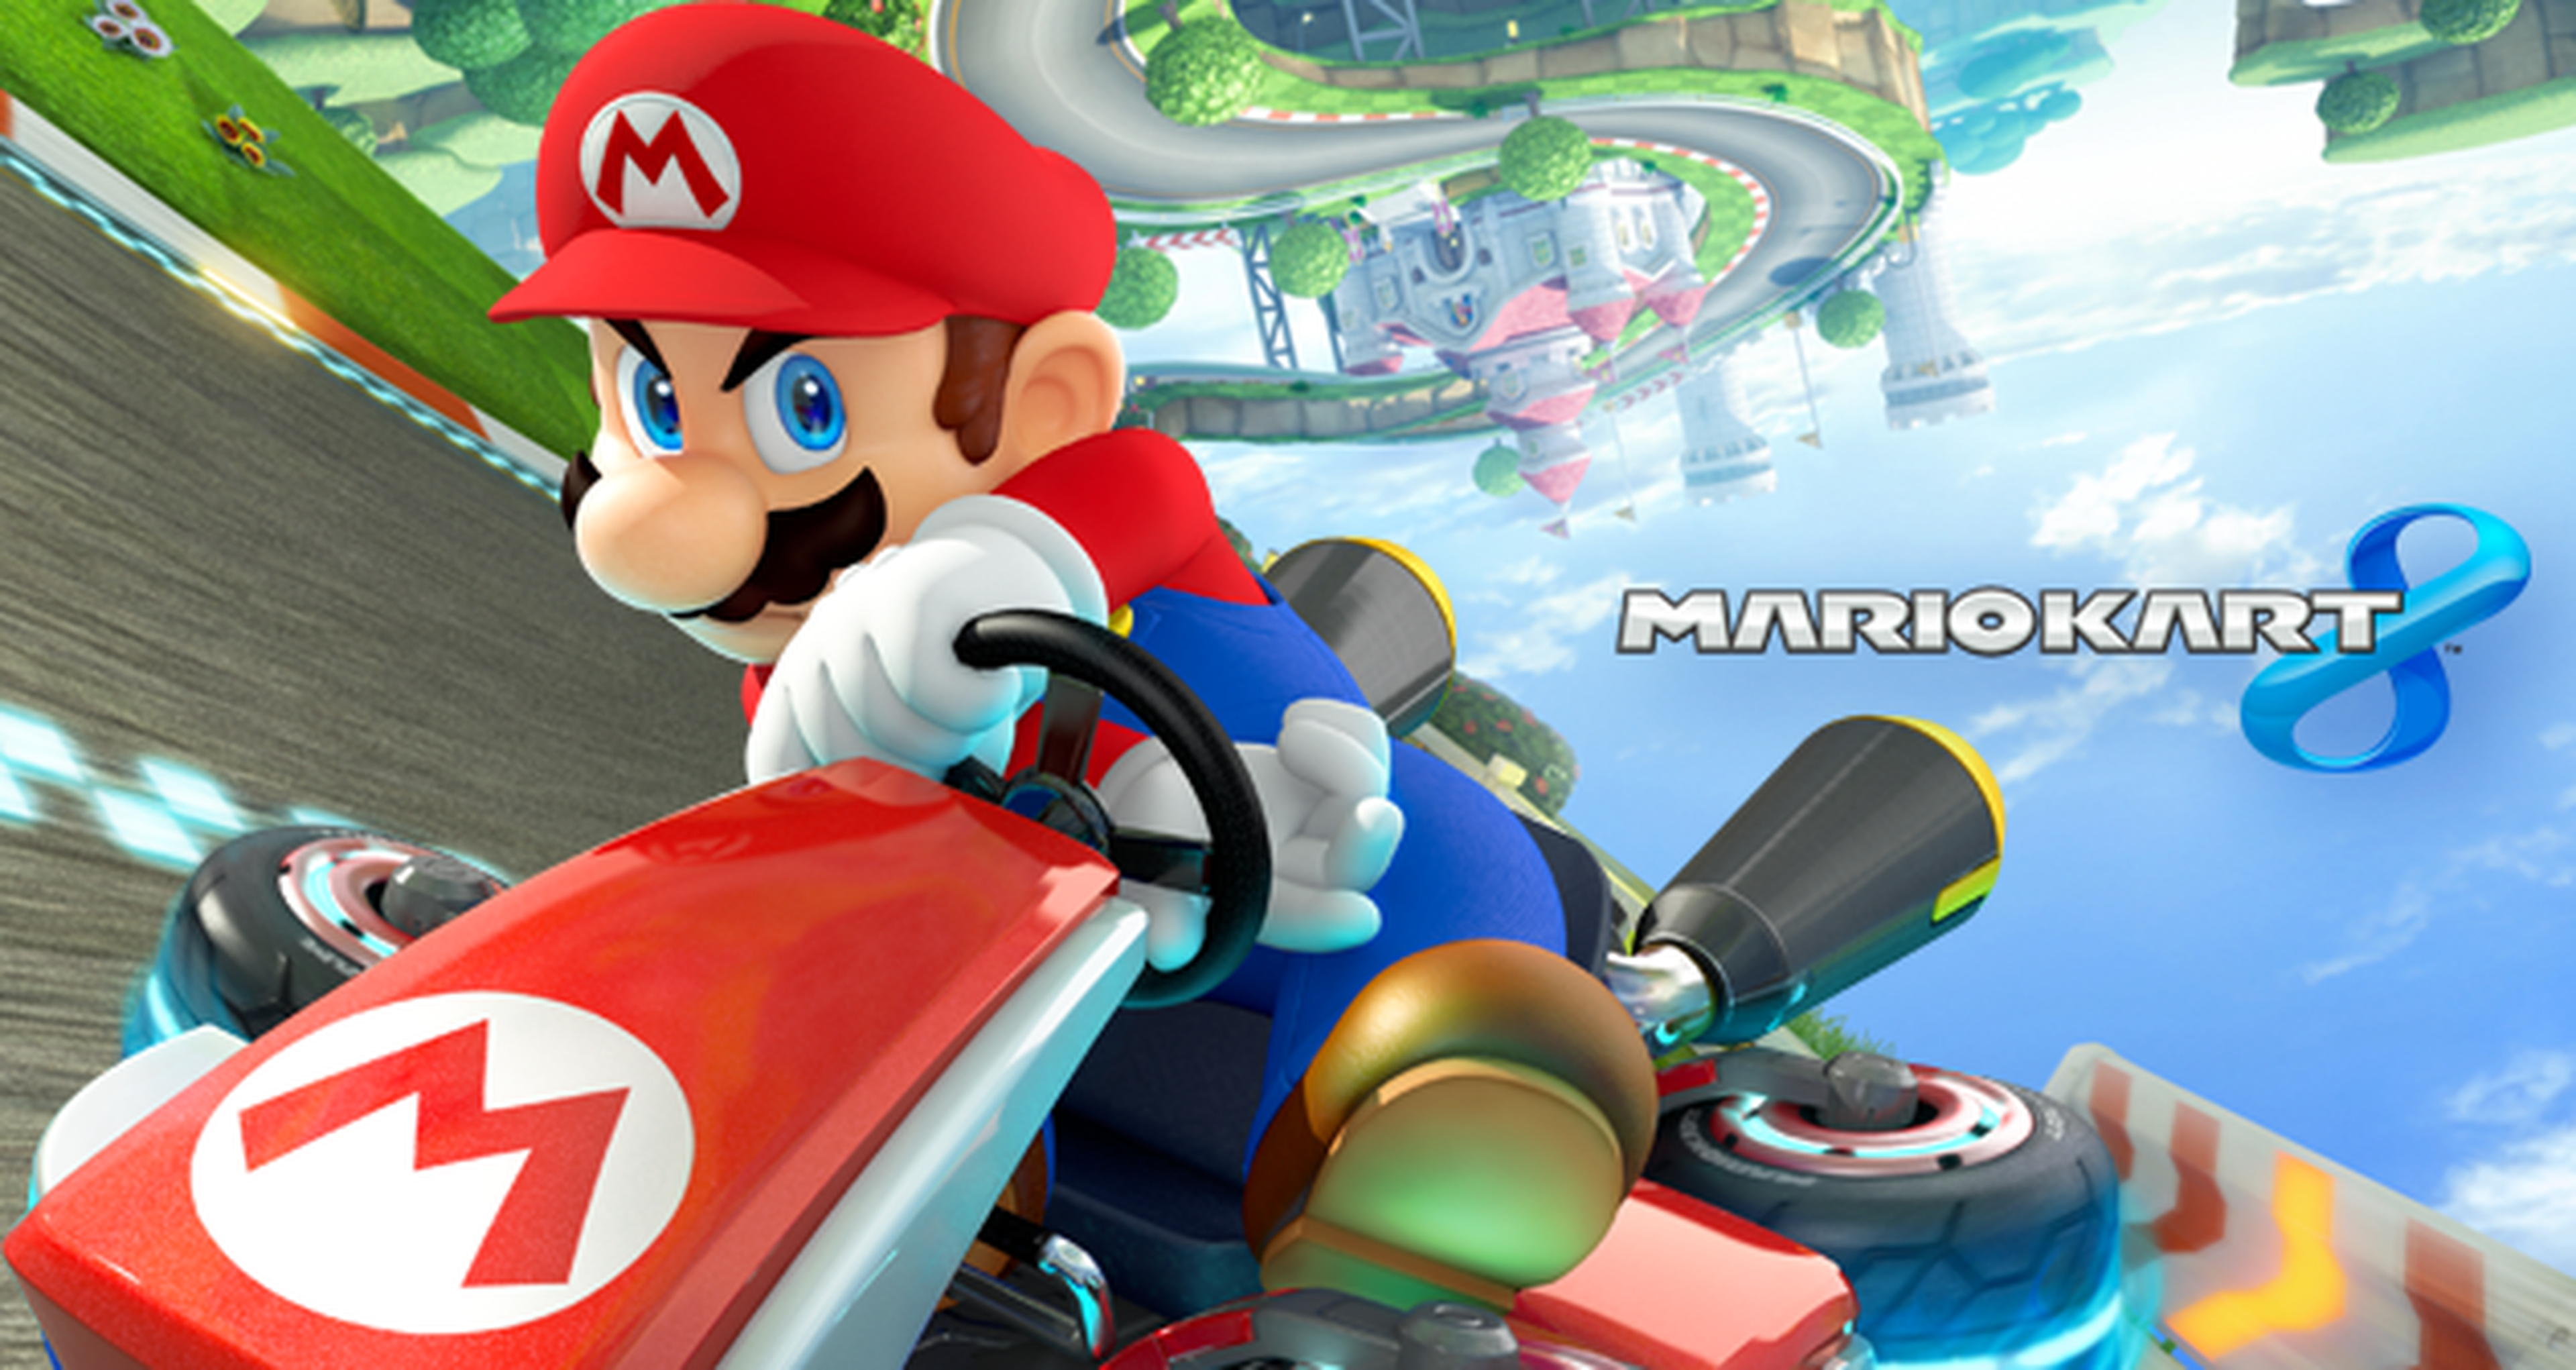 Torneo Mario Kart 8 a 200cc: Resultados Semana 4 y Convocatoria Semana 5